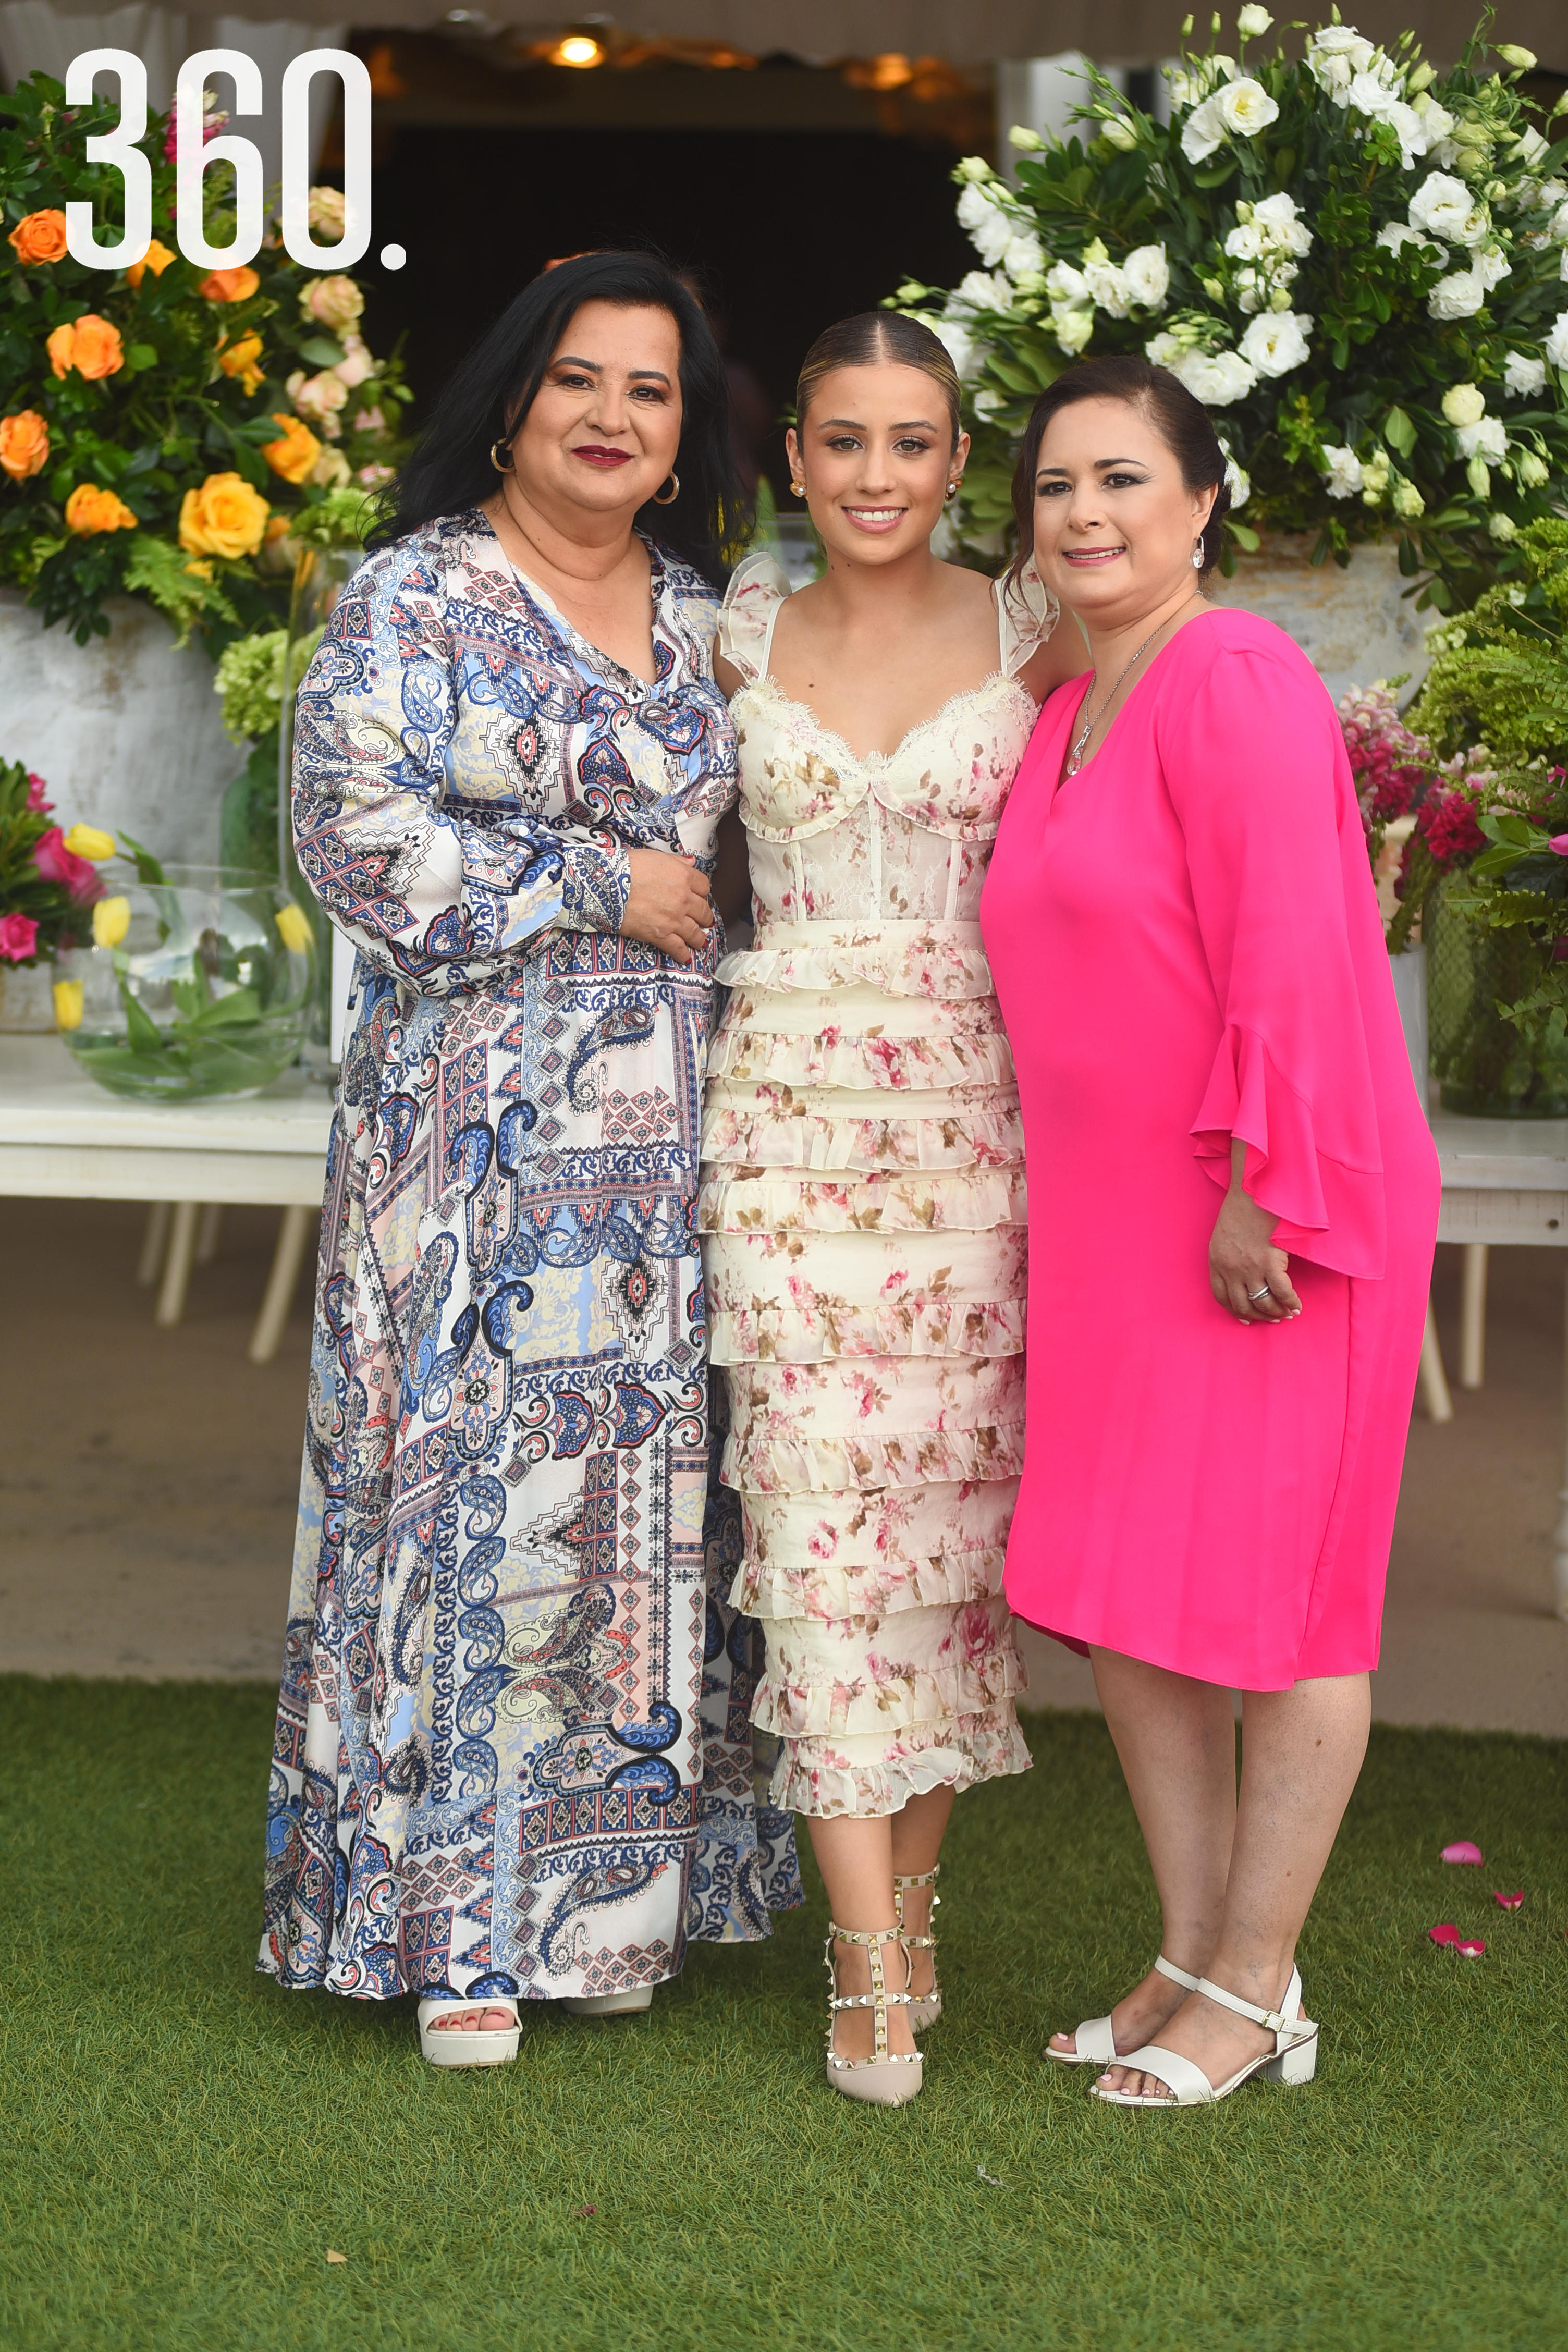 Paola Oviedo Silos con su suegra Norma Reyes de González y su mamá María de Jesús Silos.